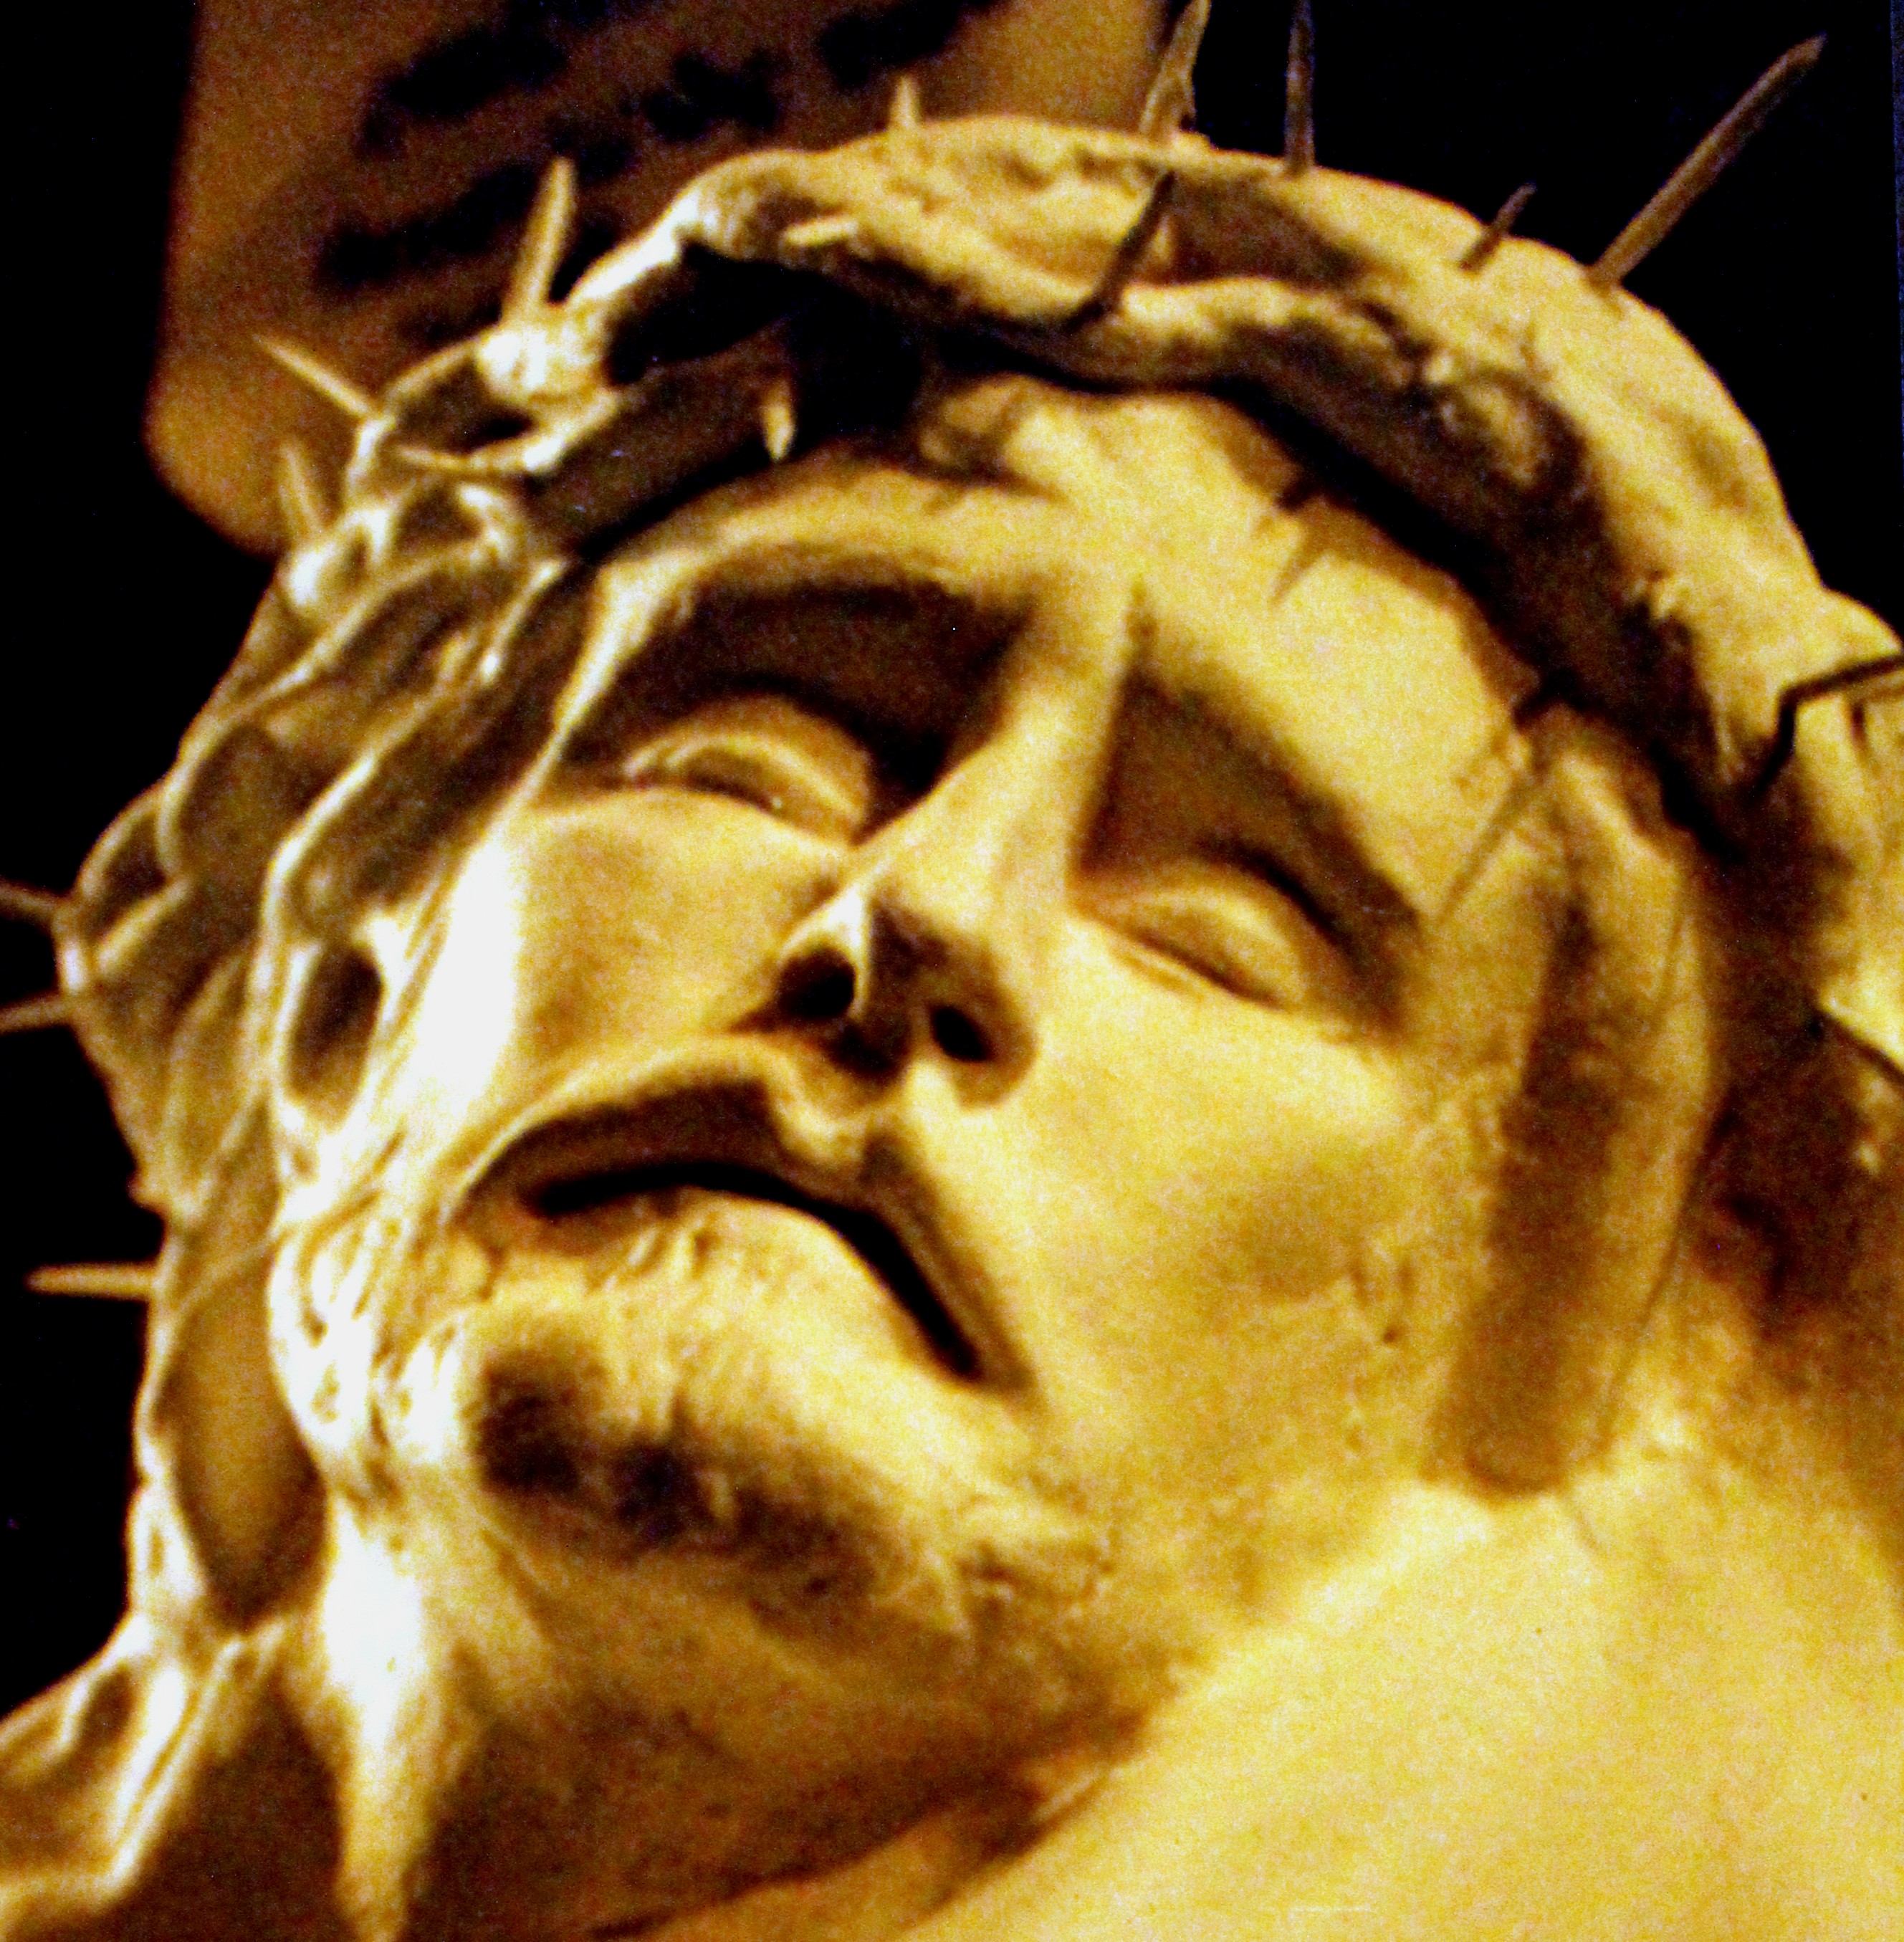 St Pauls Shettleston crucified Jesus head 2.jpg